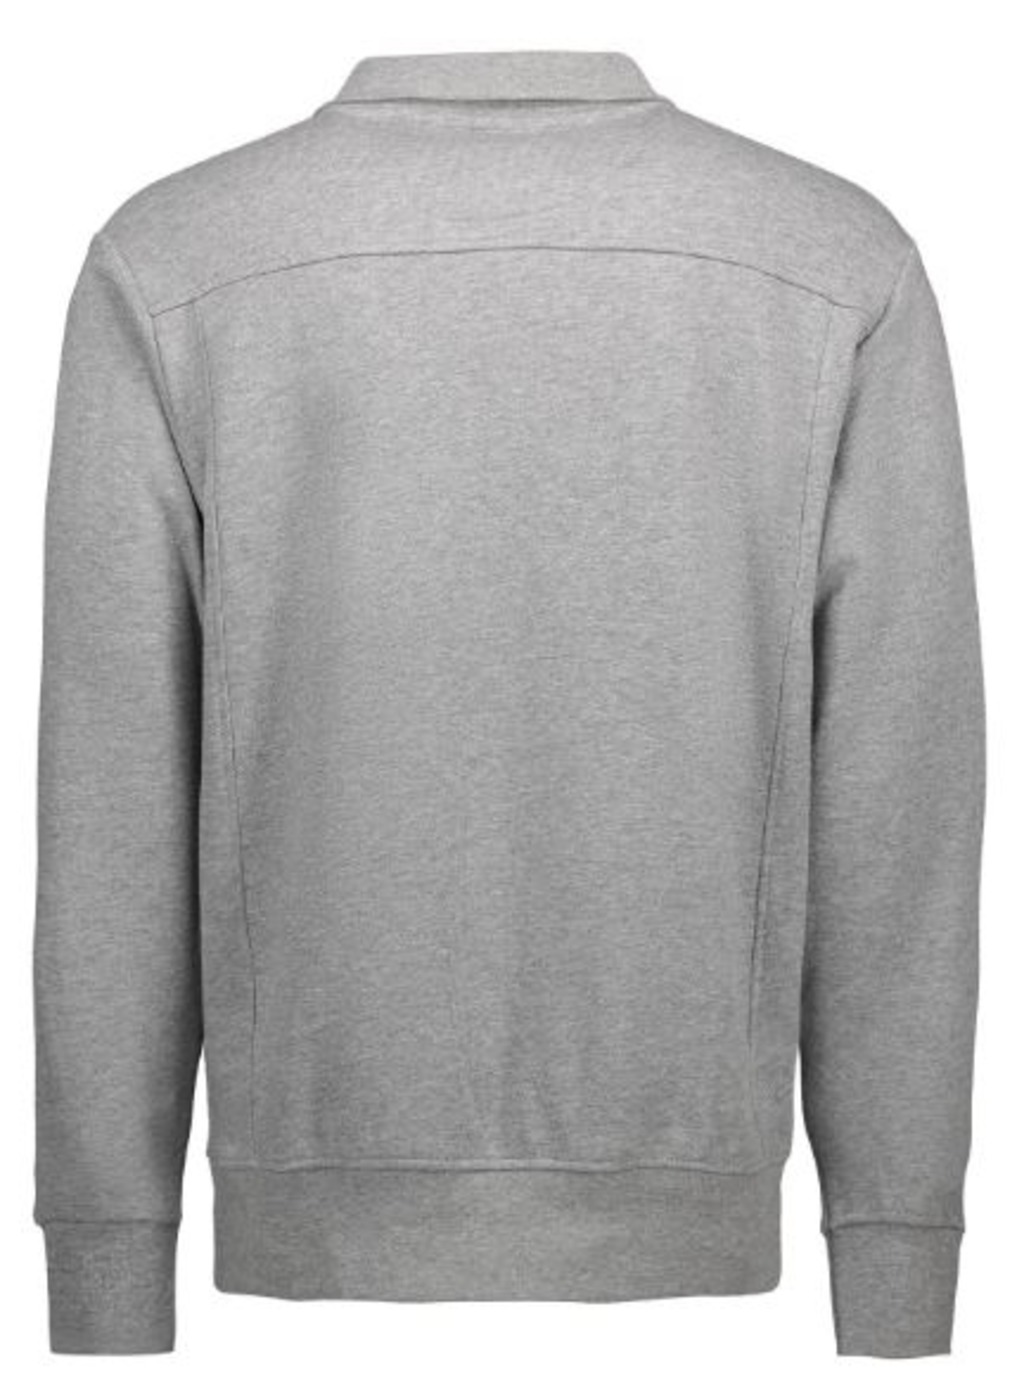 0603 Zip Sweater